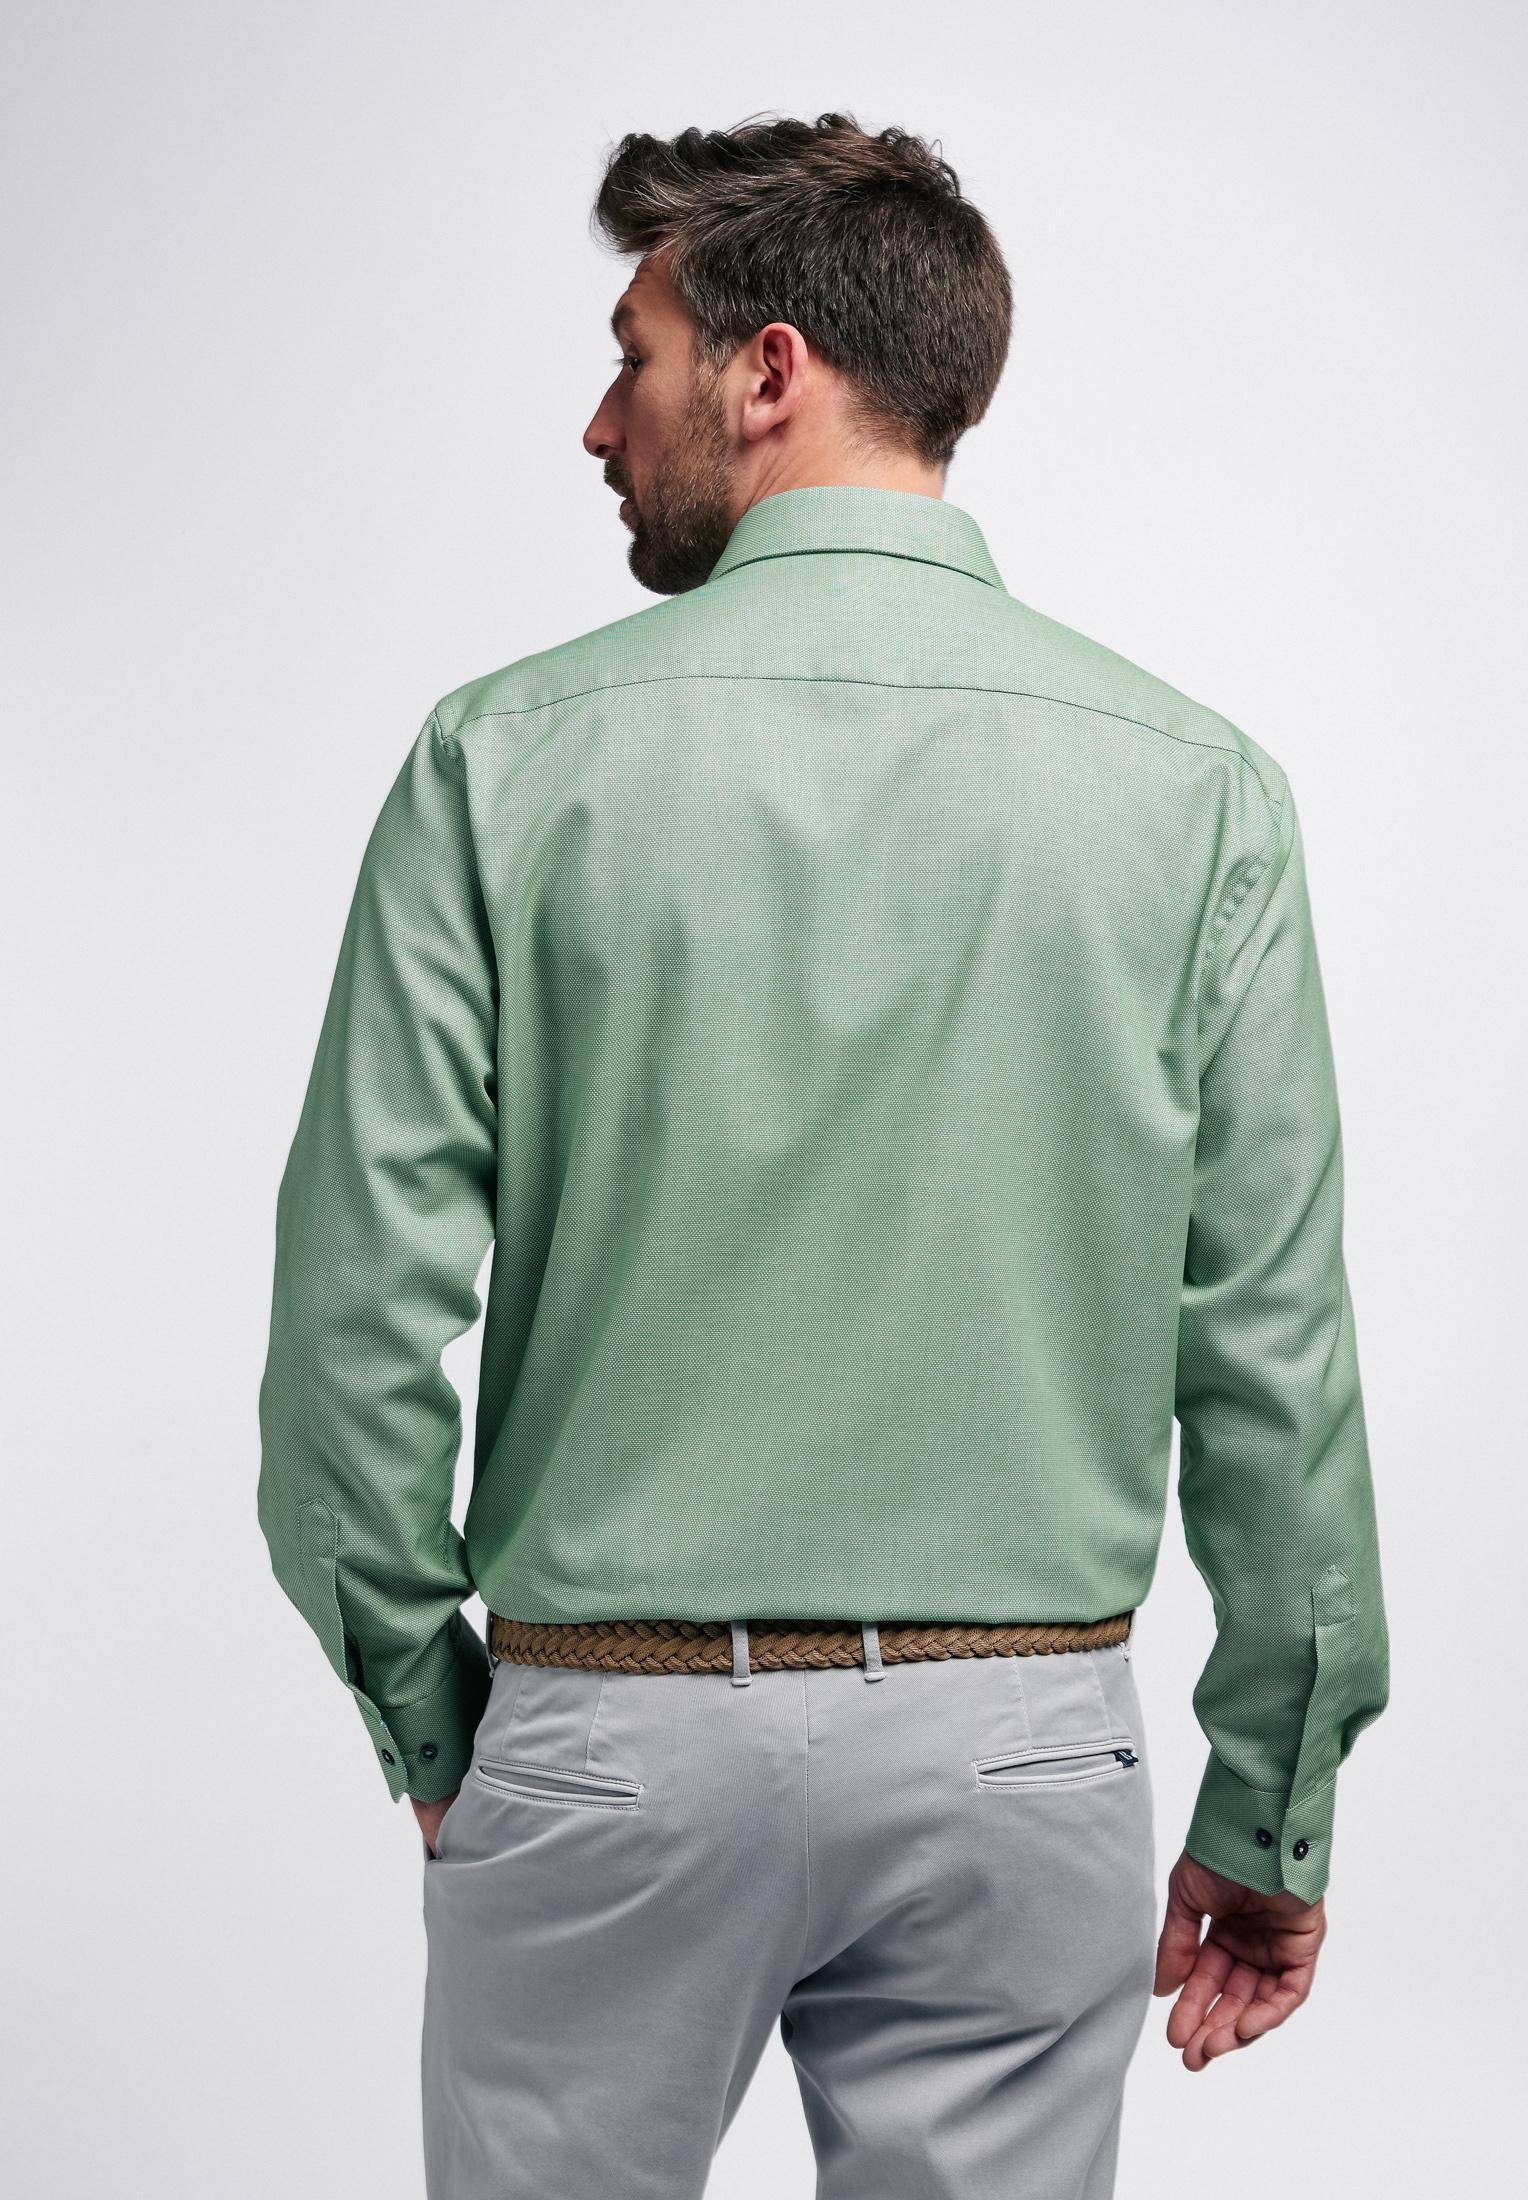 Мужская рубашка ETERNA, зеленая, цвет зеленый, размер 48 - фото 5